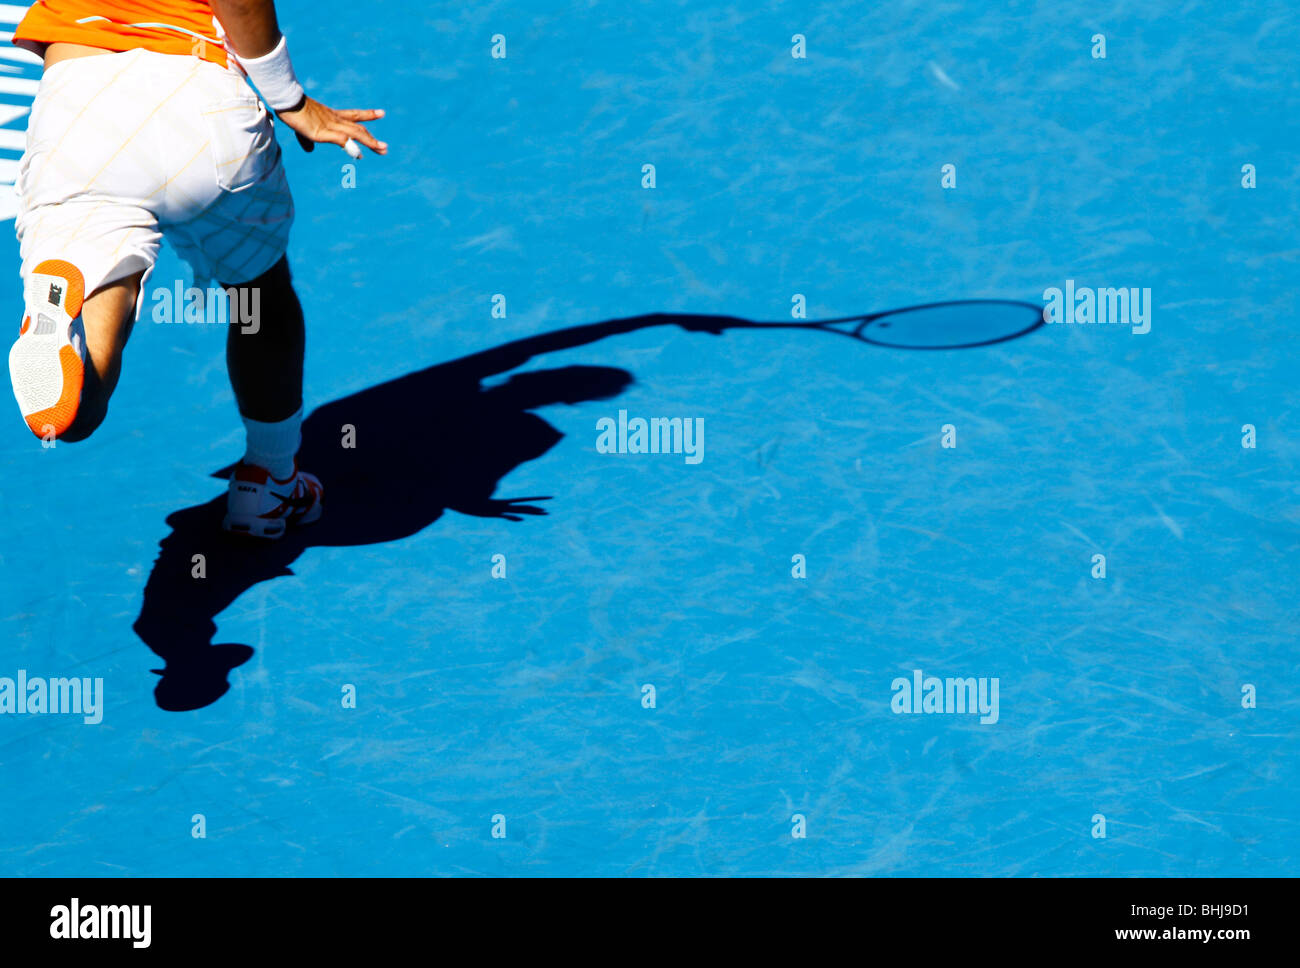 Rafael Nadal di Spagna presso l'Australian Open 2010 a Melbourne, Australia Foto Stock